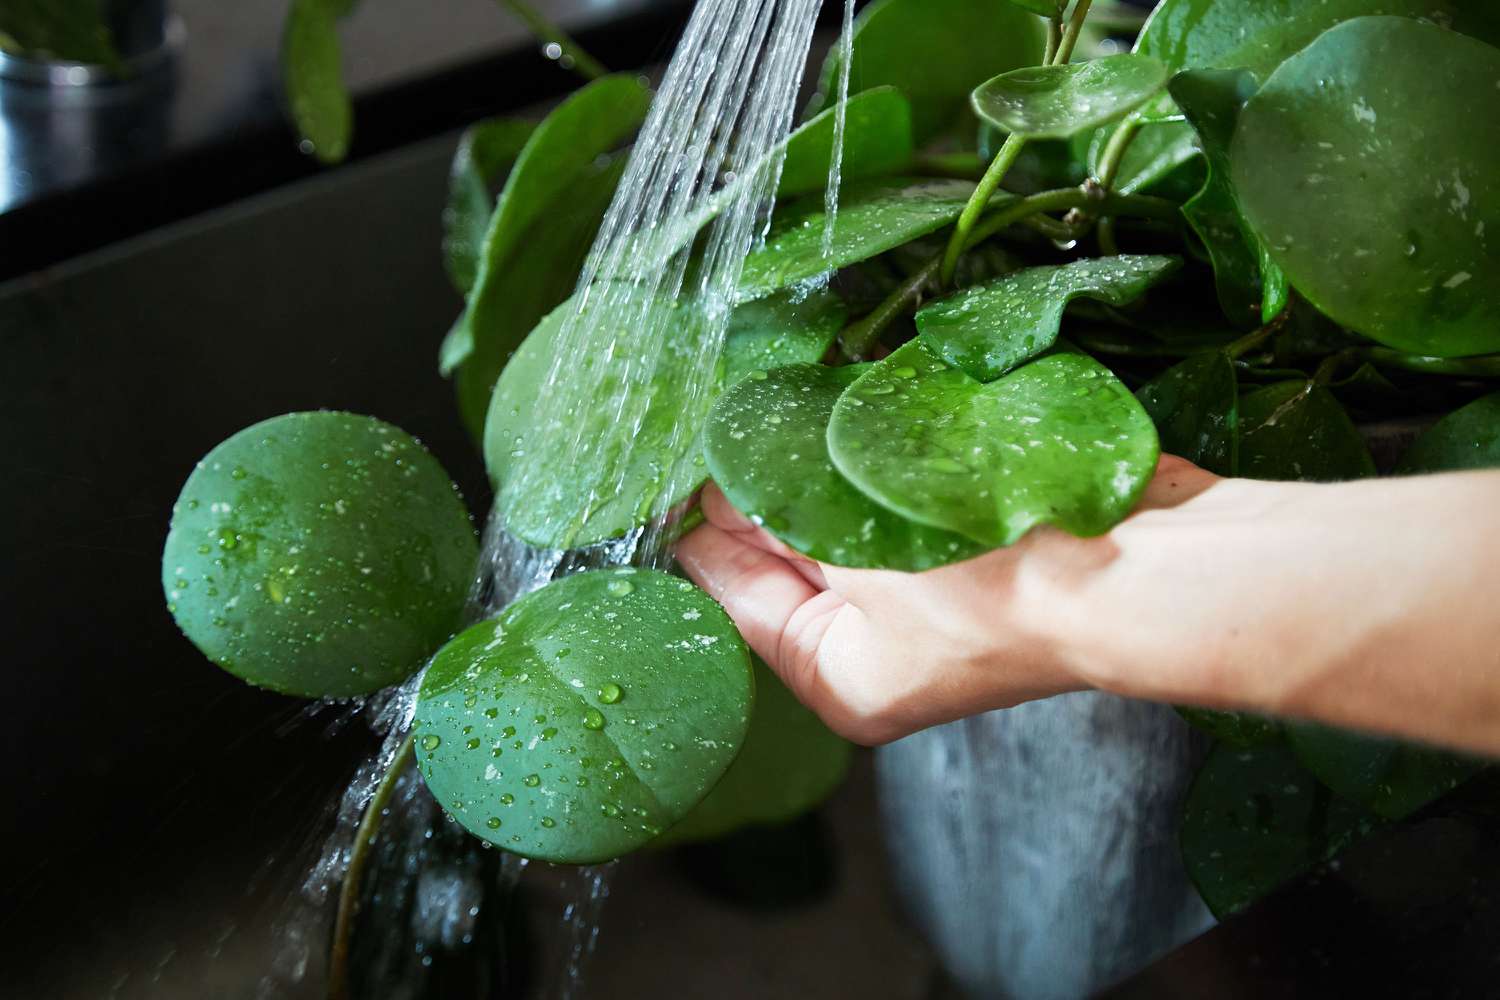 Zimmerpflanze unter fließendem Wasser abgespült, um Blattläuse abzuwaschen